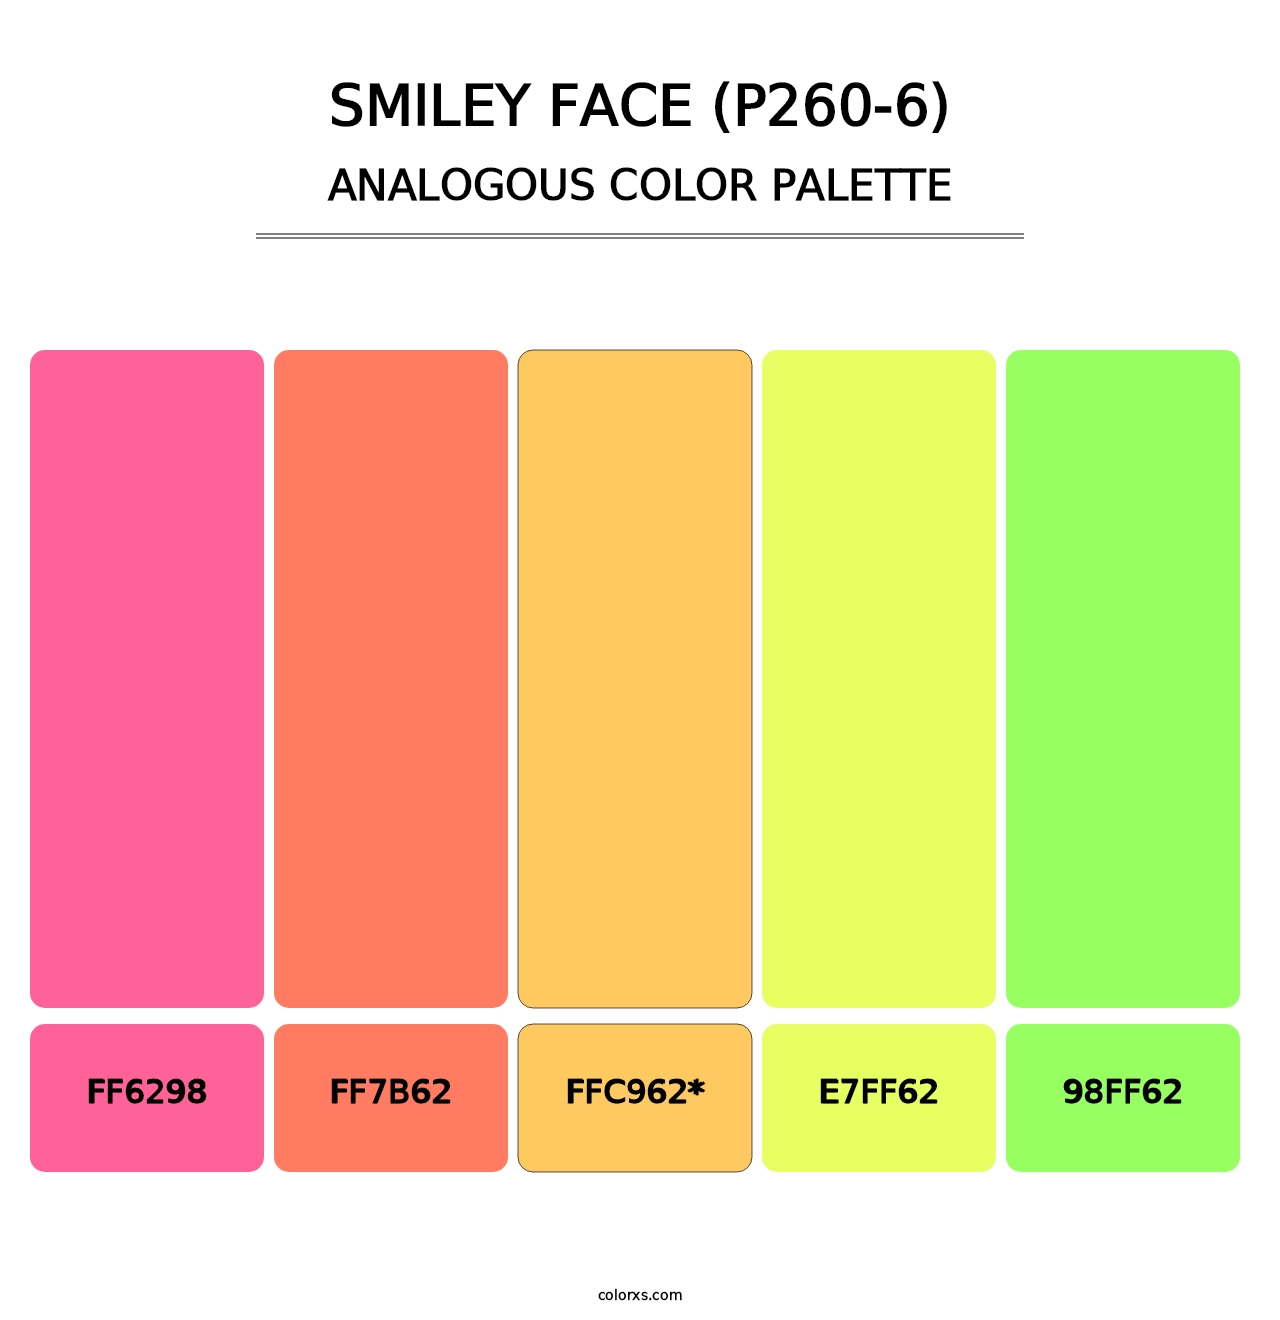 Smiley Face (P260-6) - Analogous Color Palette